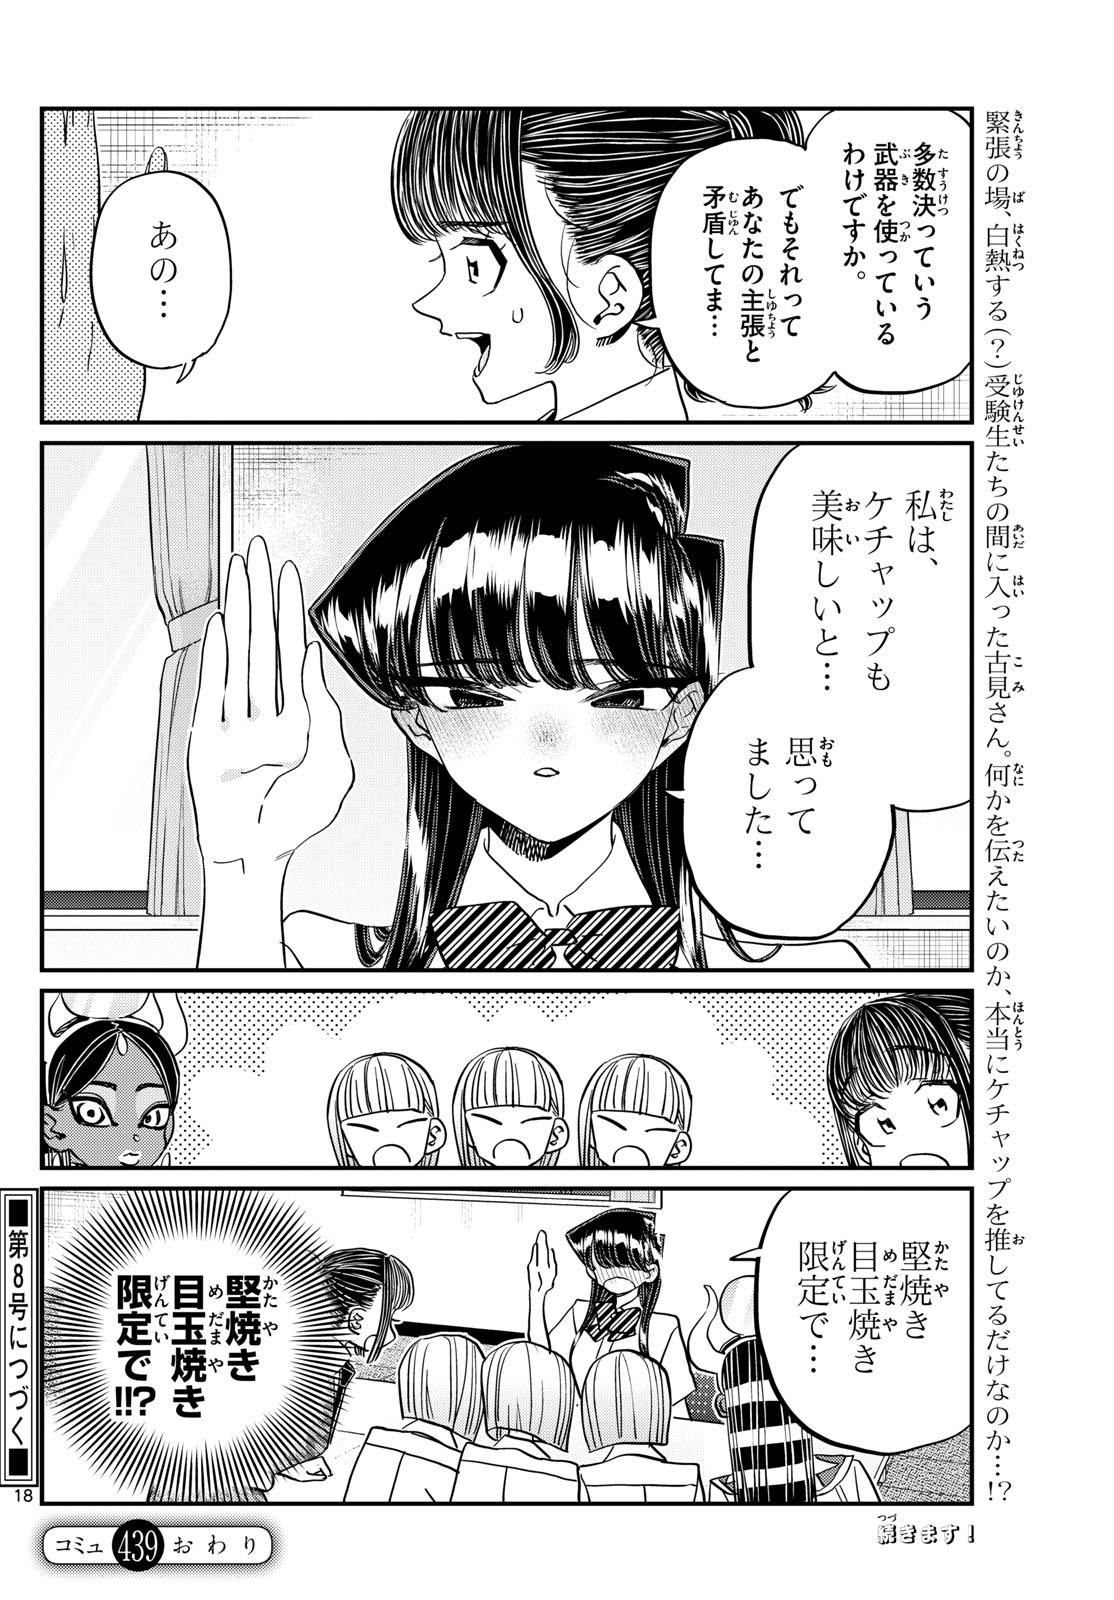 Komi-san wa Komyushou Desu - Chapter 439 - Page 5